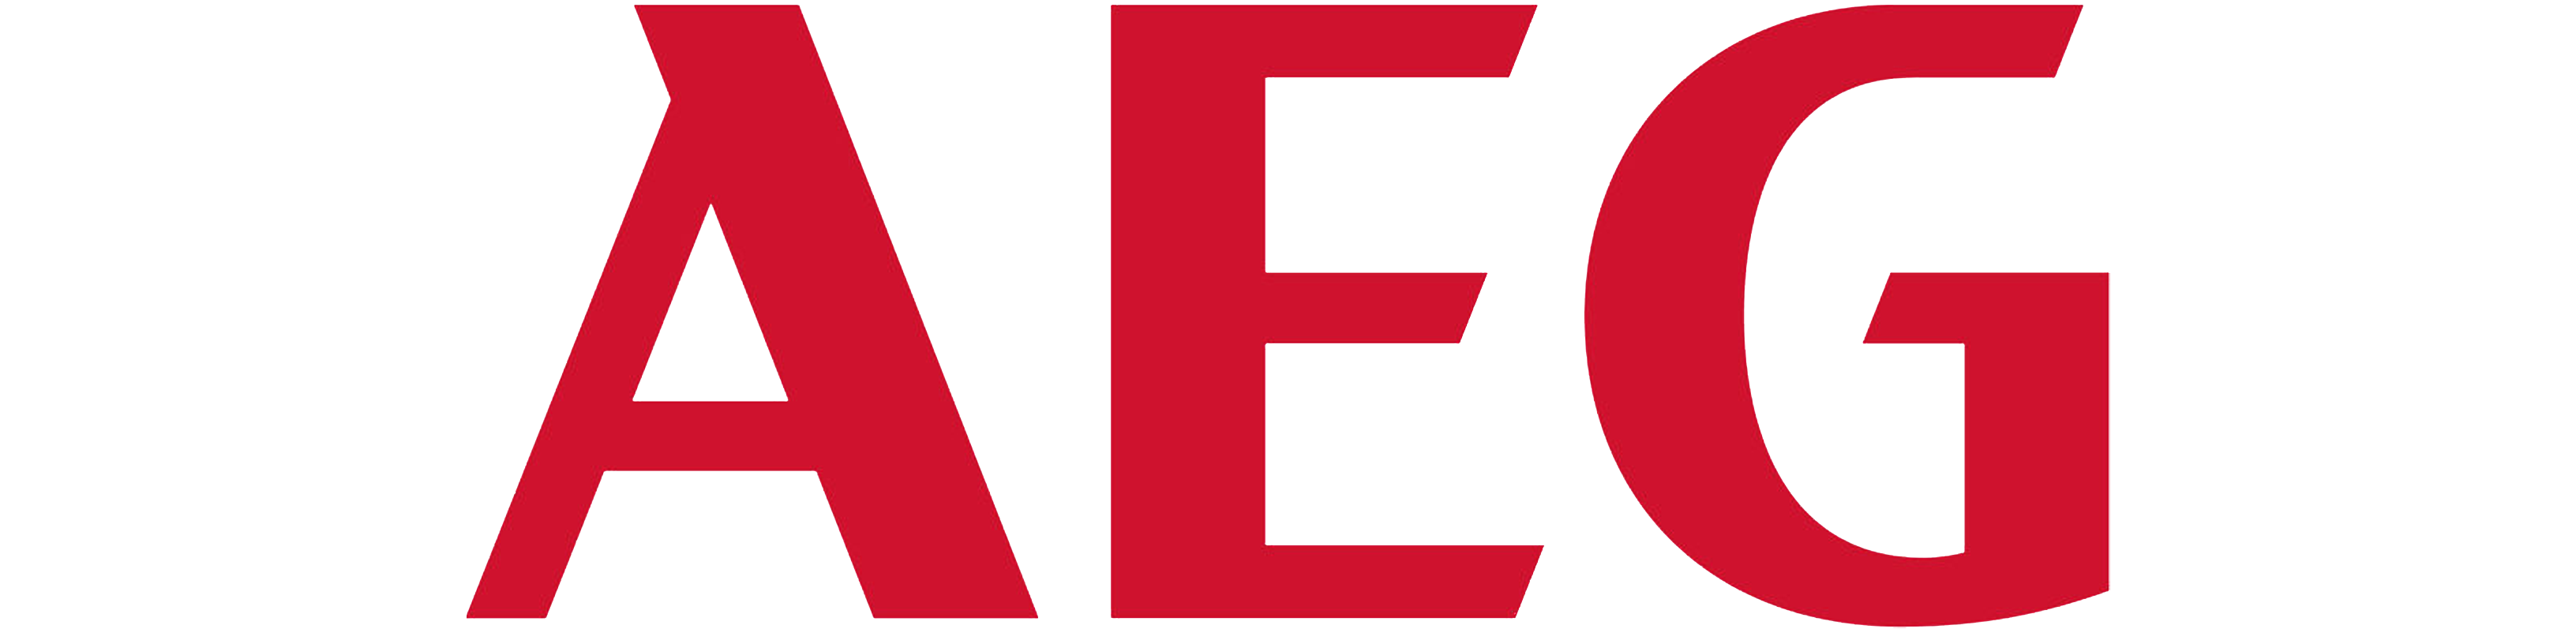 logo_AEG png